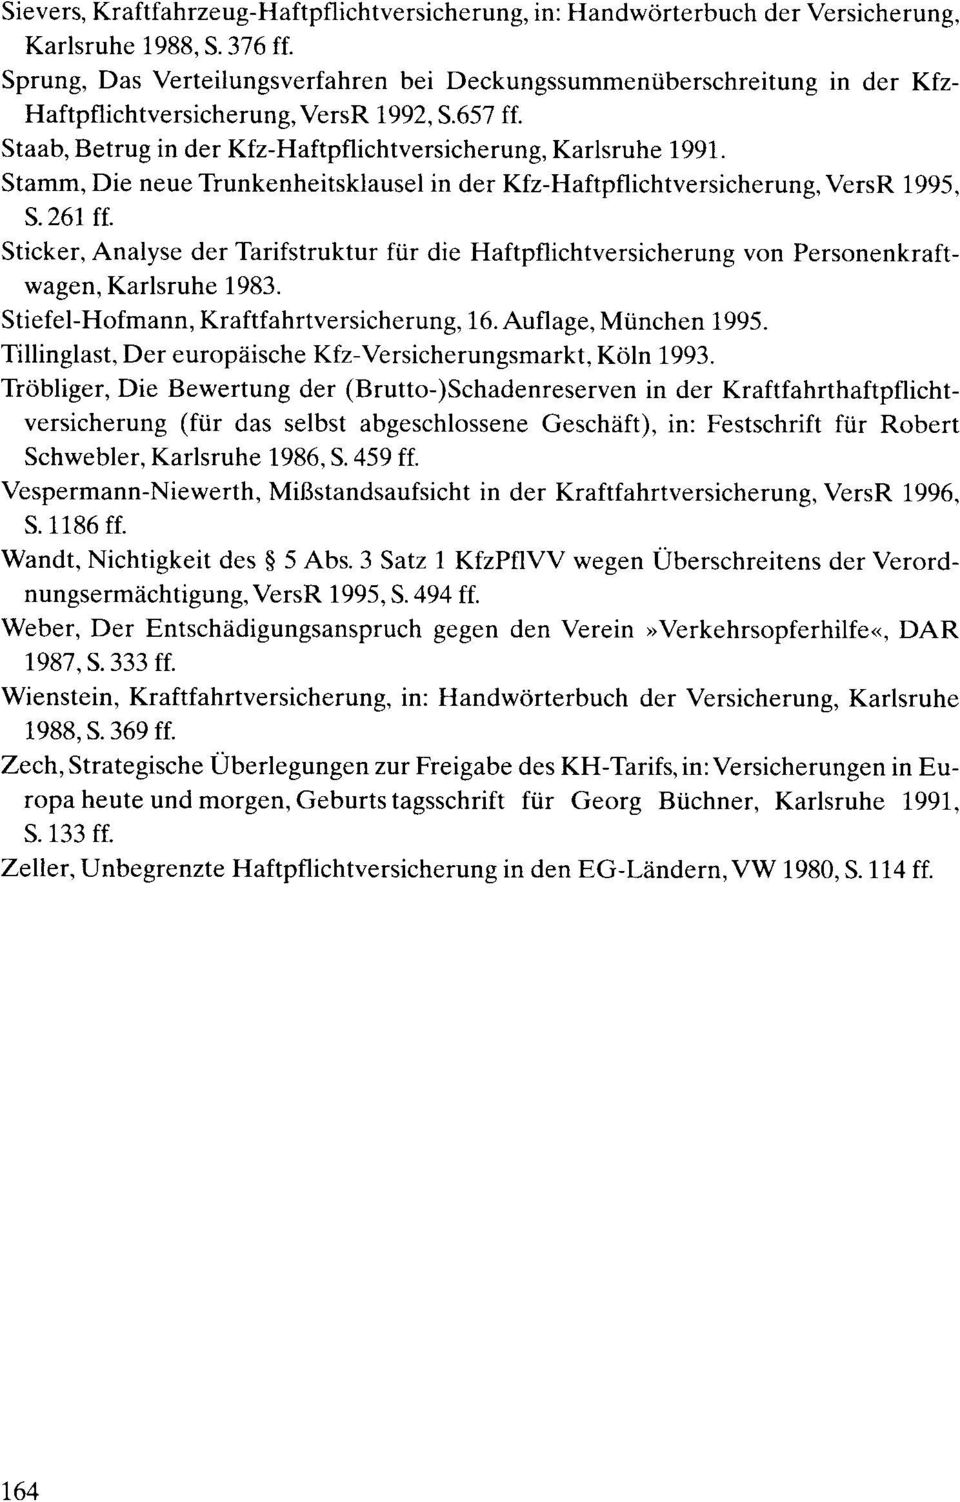 Stamm, Die neue Trunkenheitsklausel in der Kfz-Haftpflichtversicherung, VersR 1995, S.261 ff. Sticker, Analyse der Tarifstruktur fi.